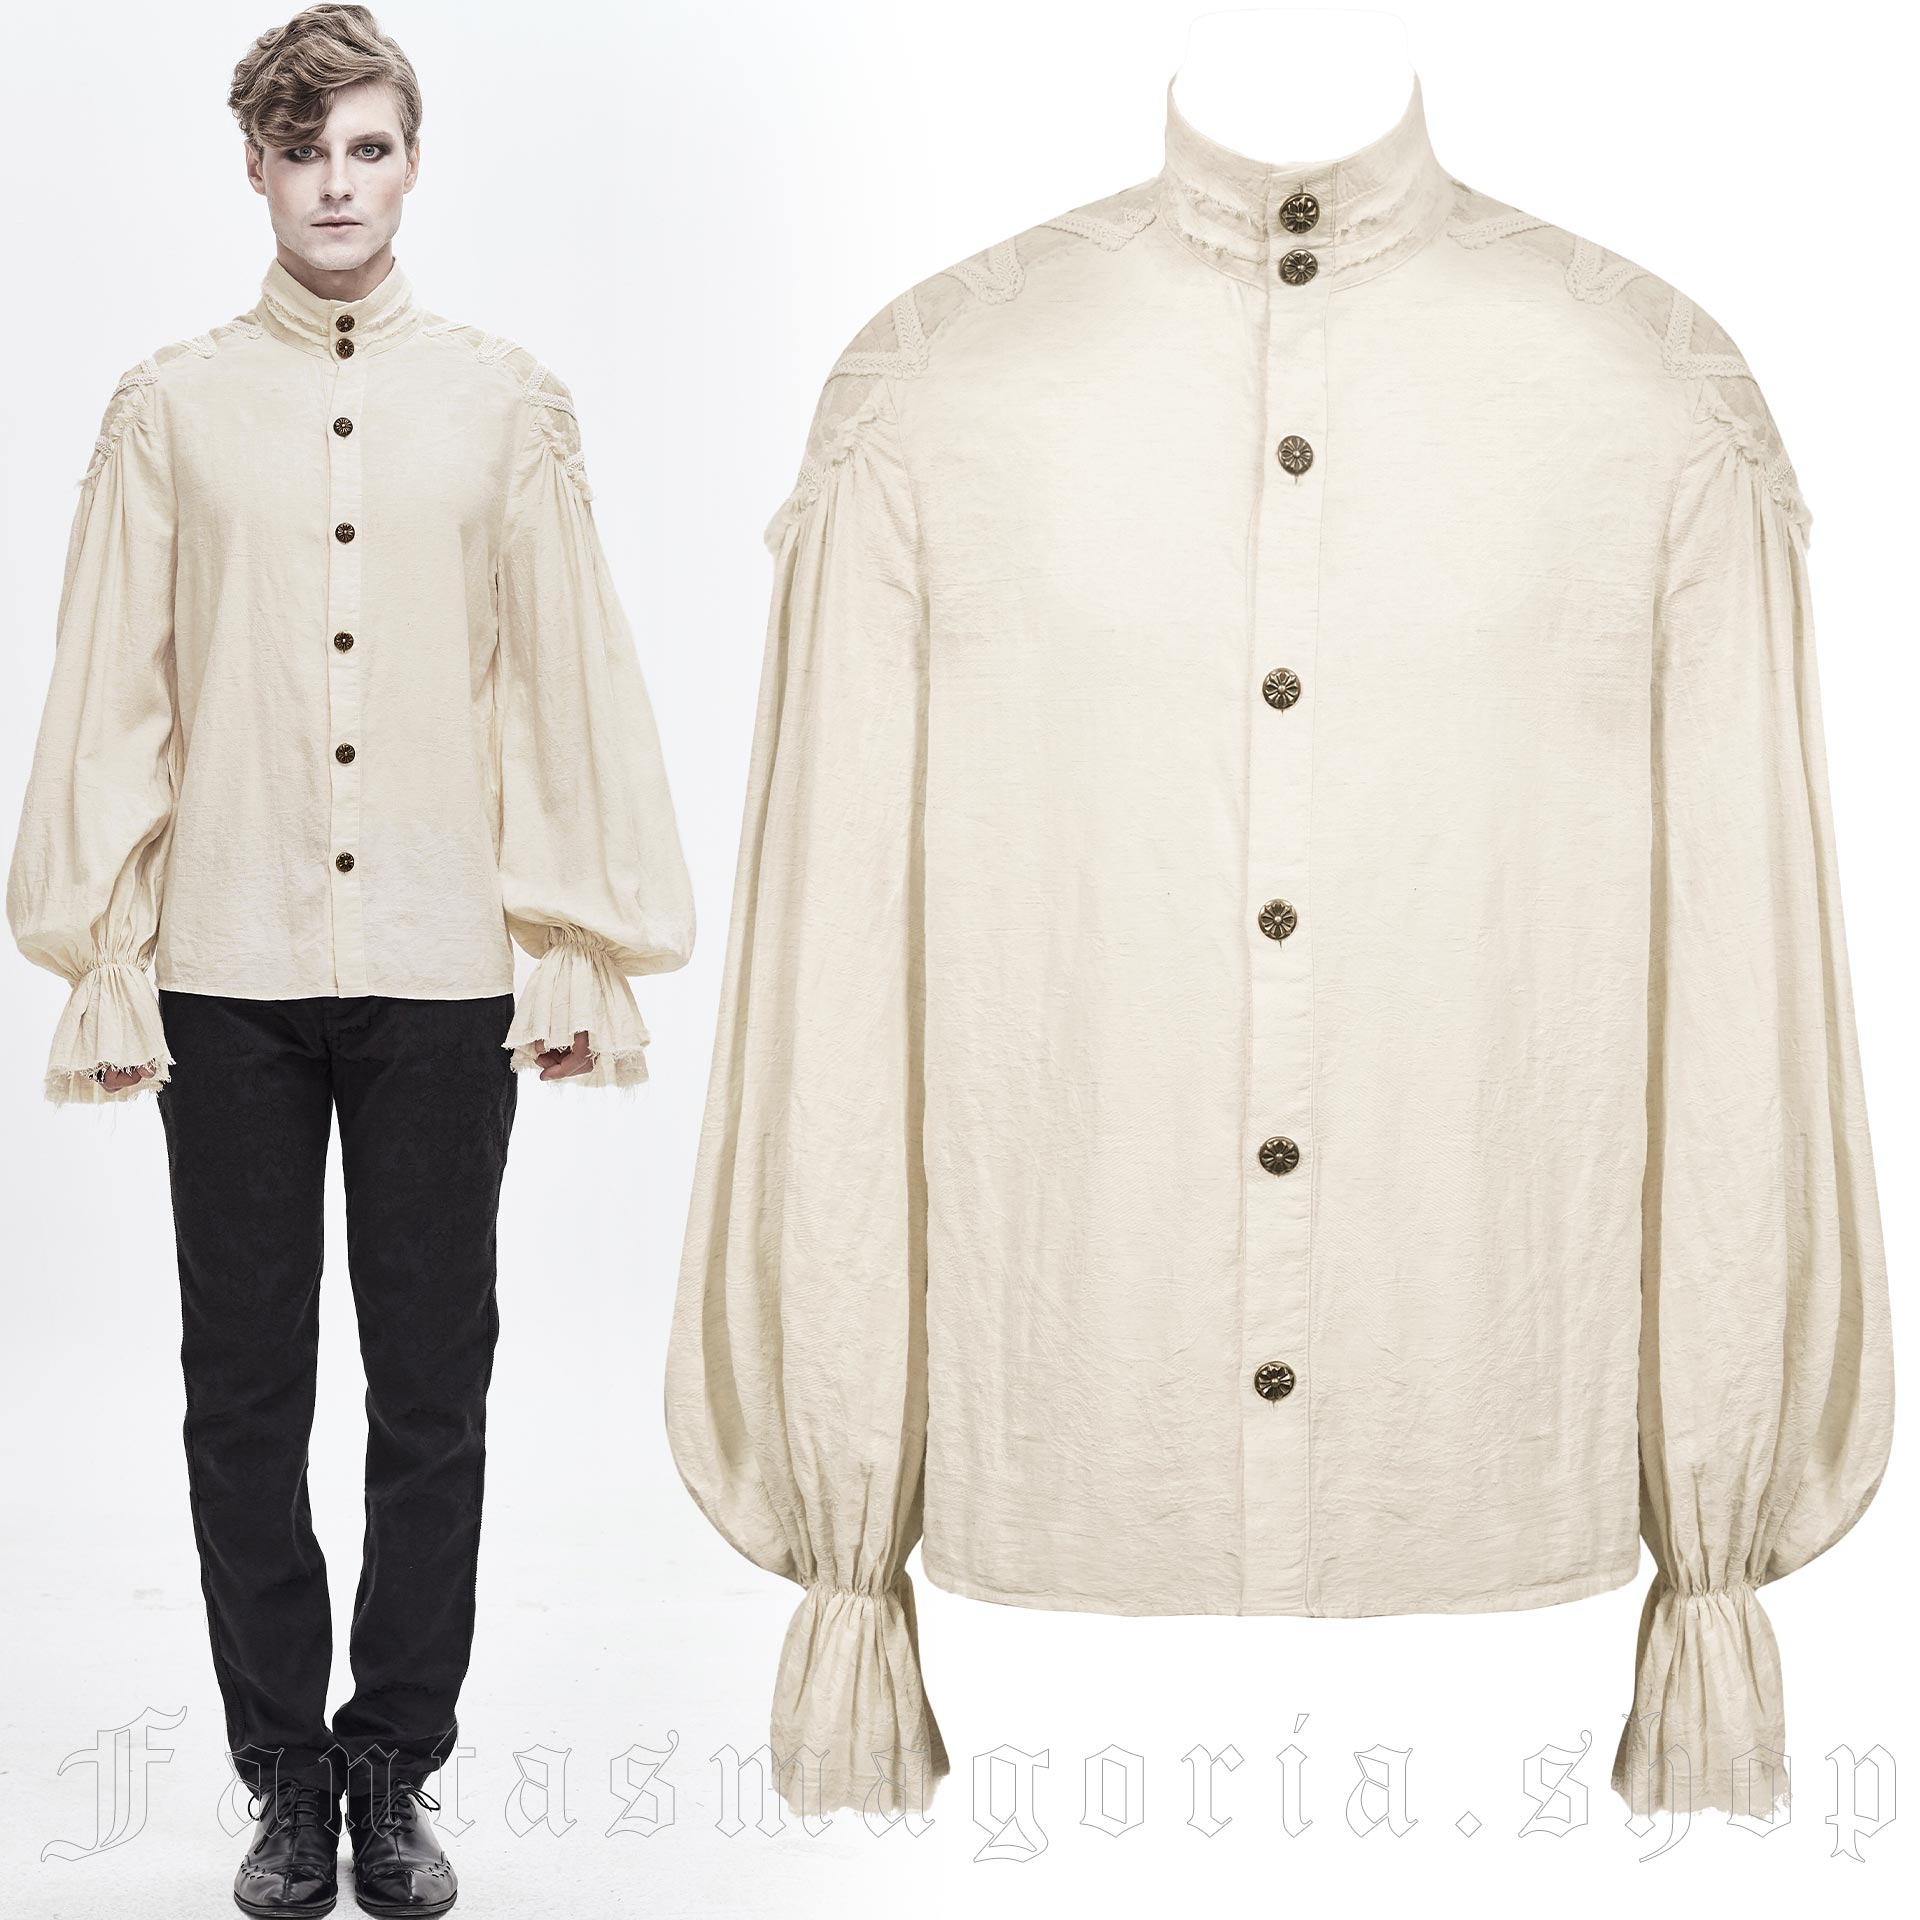 Pierrot Beige White Shirt - Devil Fashion - SHT04802 1